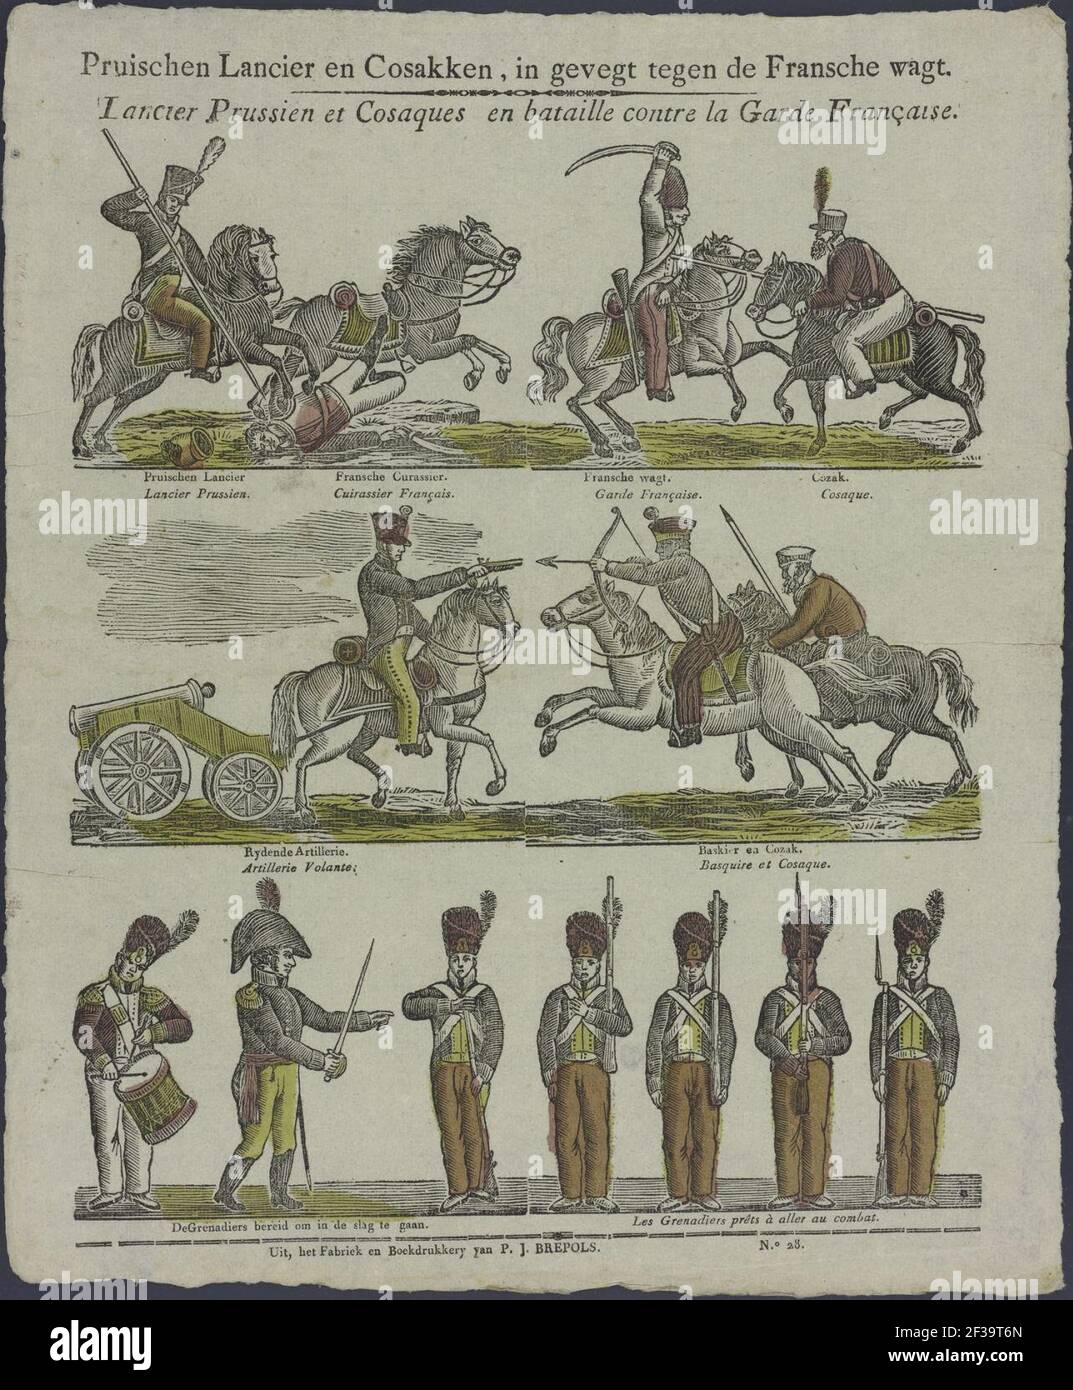 Pruischen lancier en cosakken in gevegt tegen de Fransche wagt-catchpenny Print-Borms 0133. Stockfoto